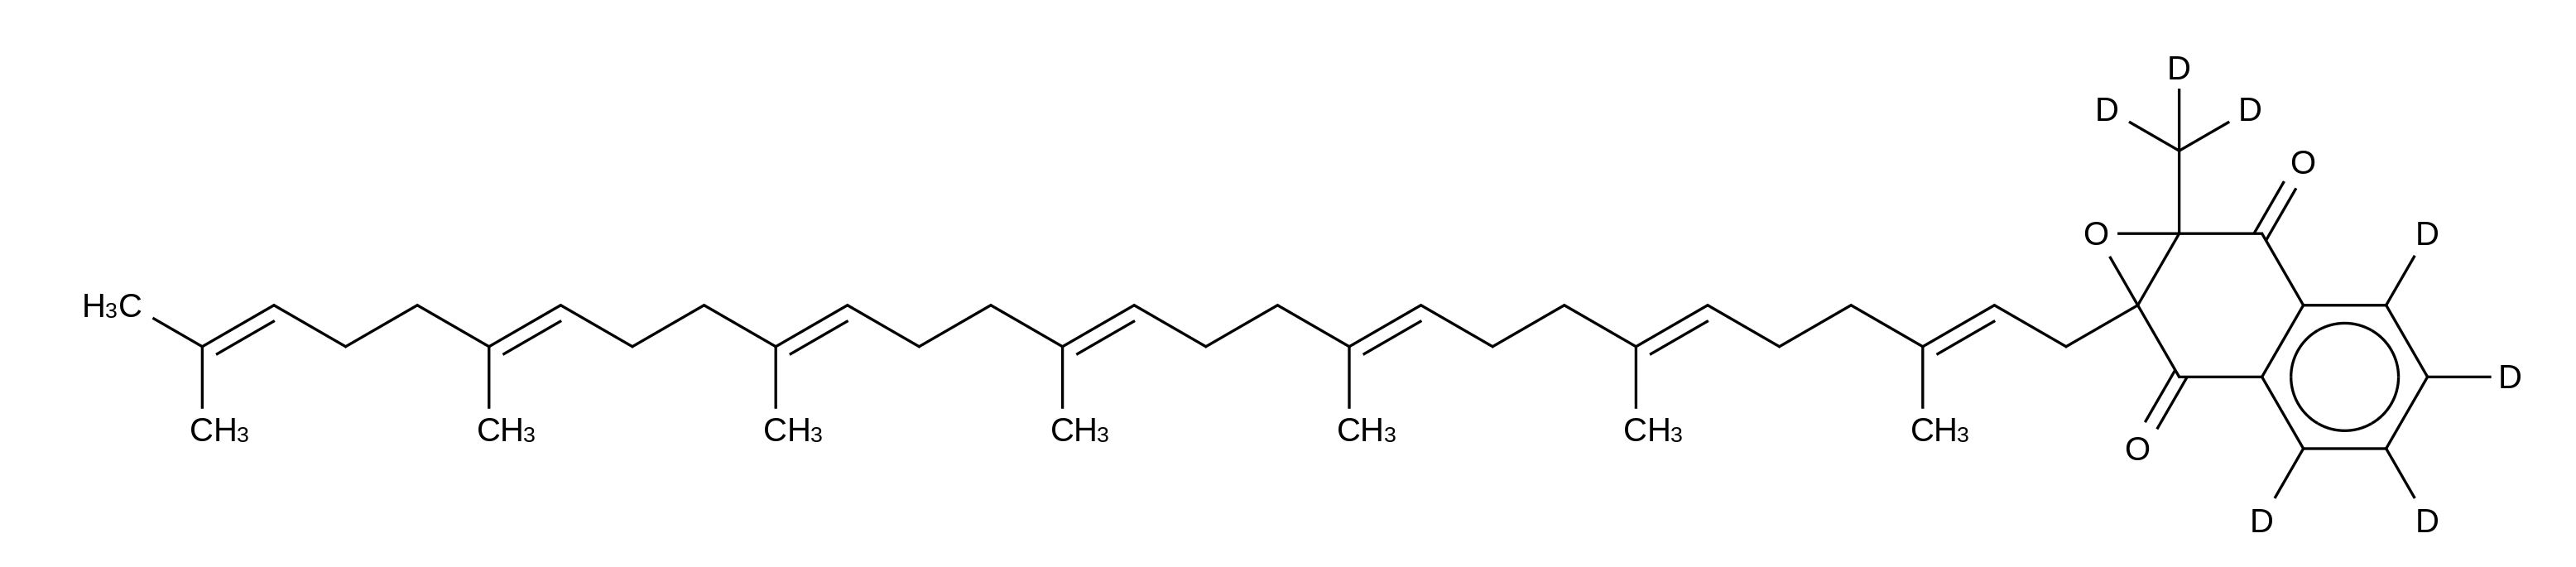 Menaquinone 7-d<sub>7</sub> 2,3-Epoxide